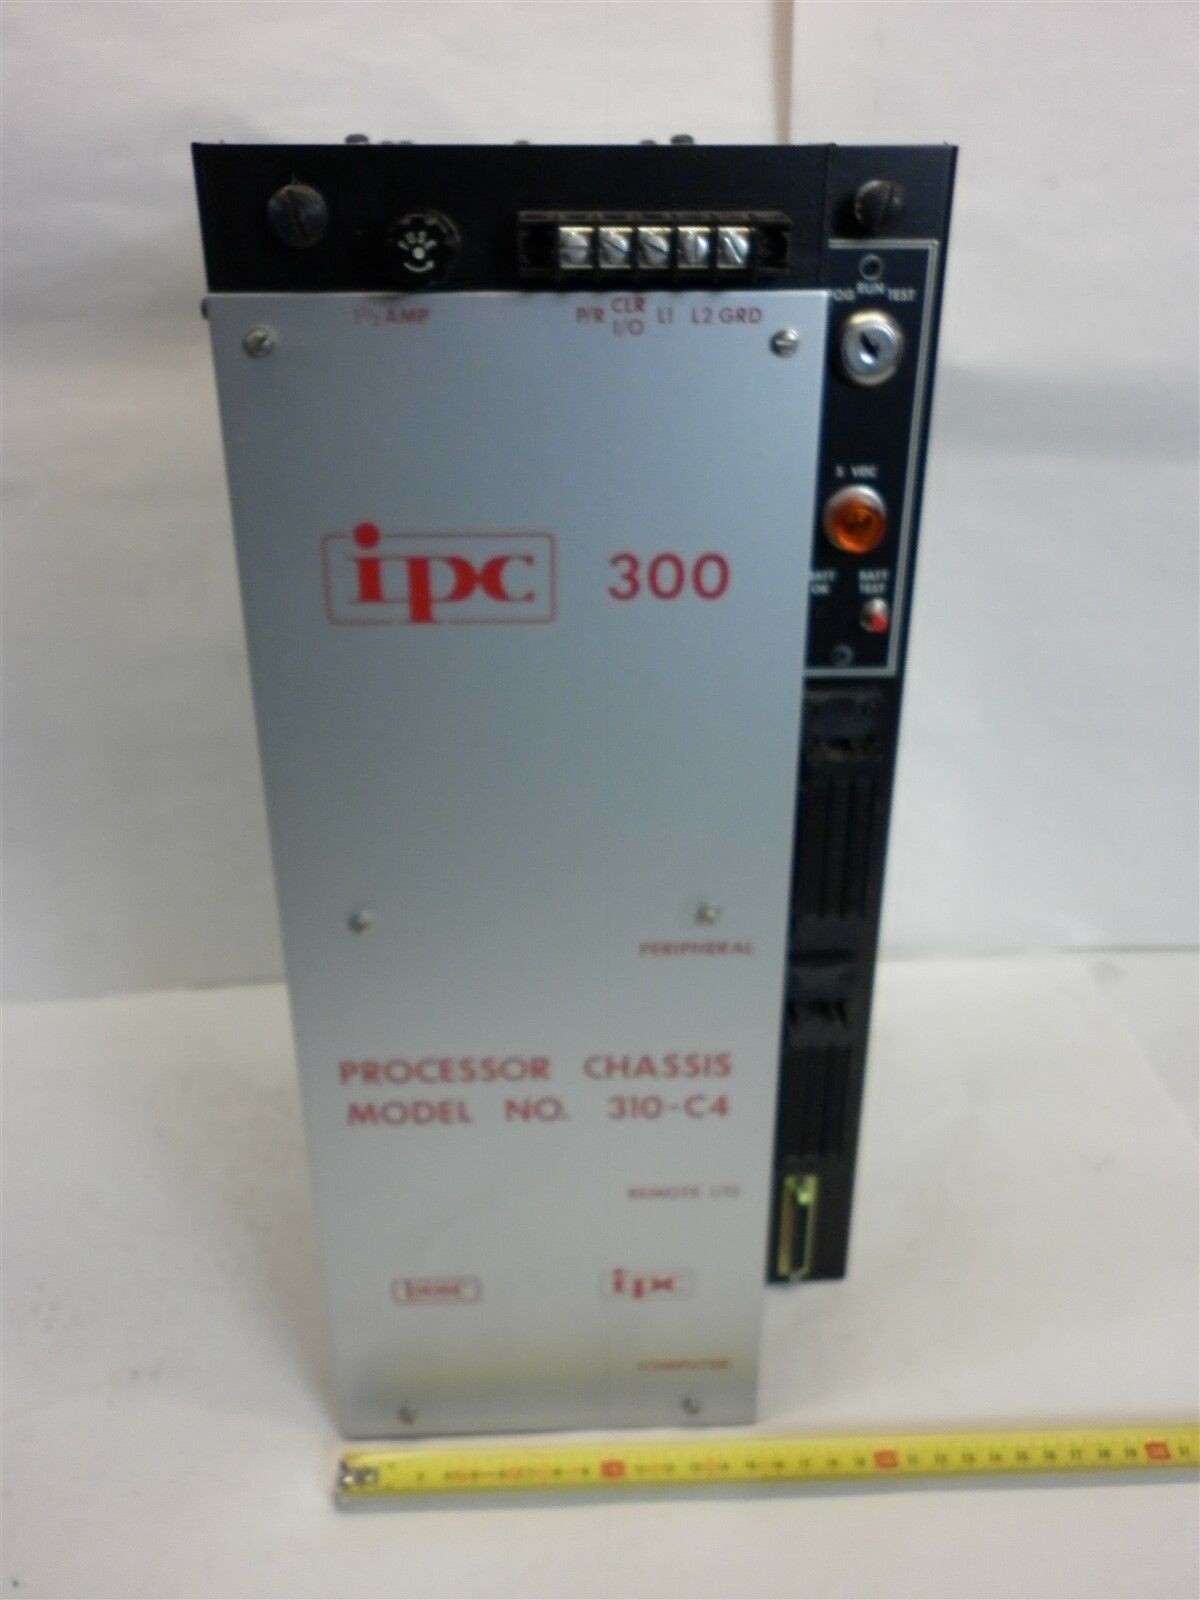 ISSC IPC 300微处理控制器，主机 310-C4维修